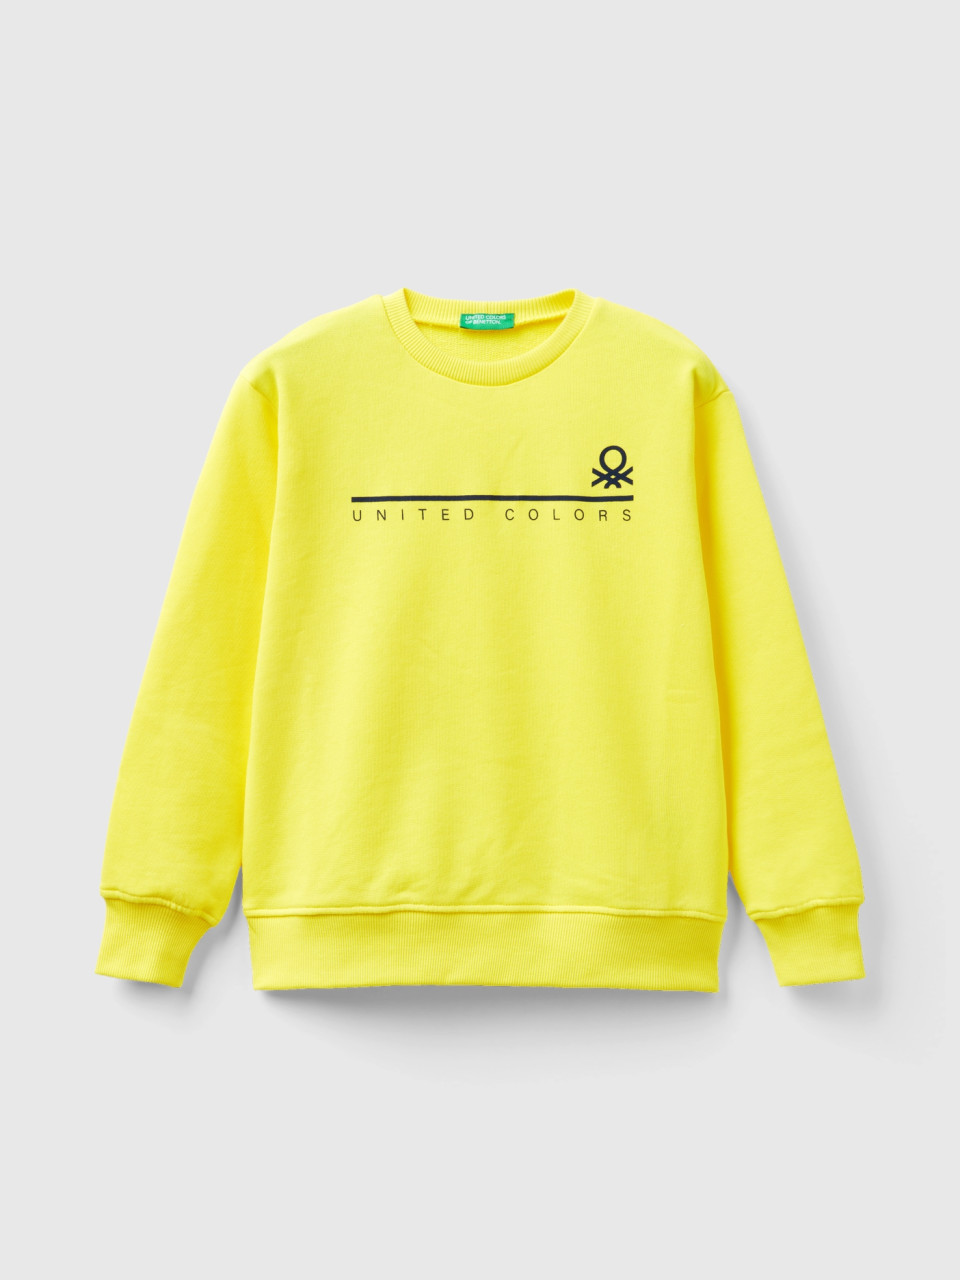 Benetton, Sweatshirt With Logo Print, Yellow, Kids